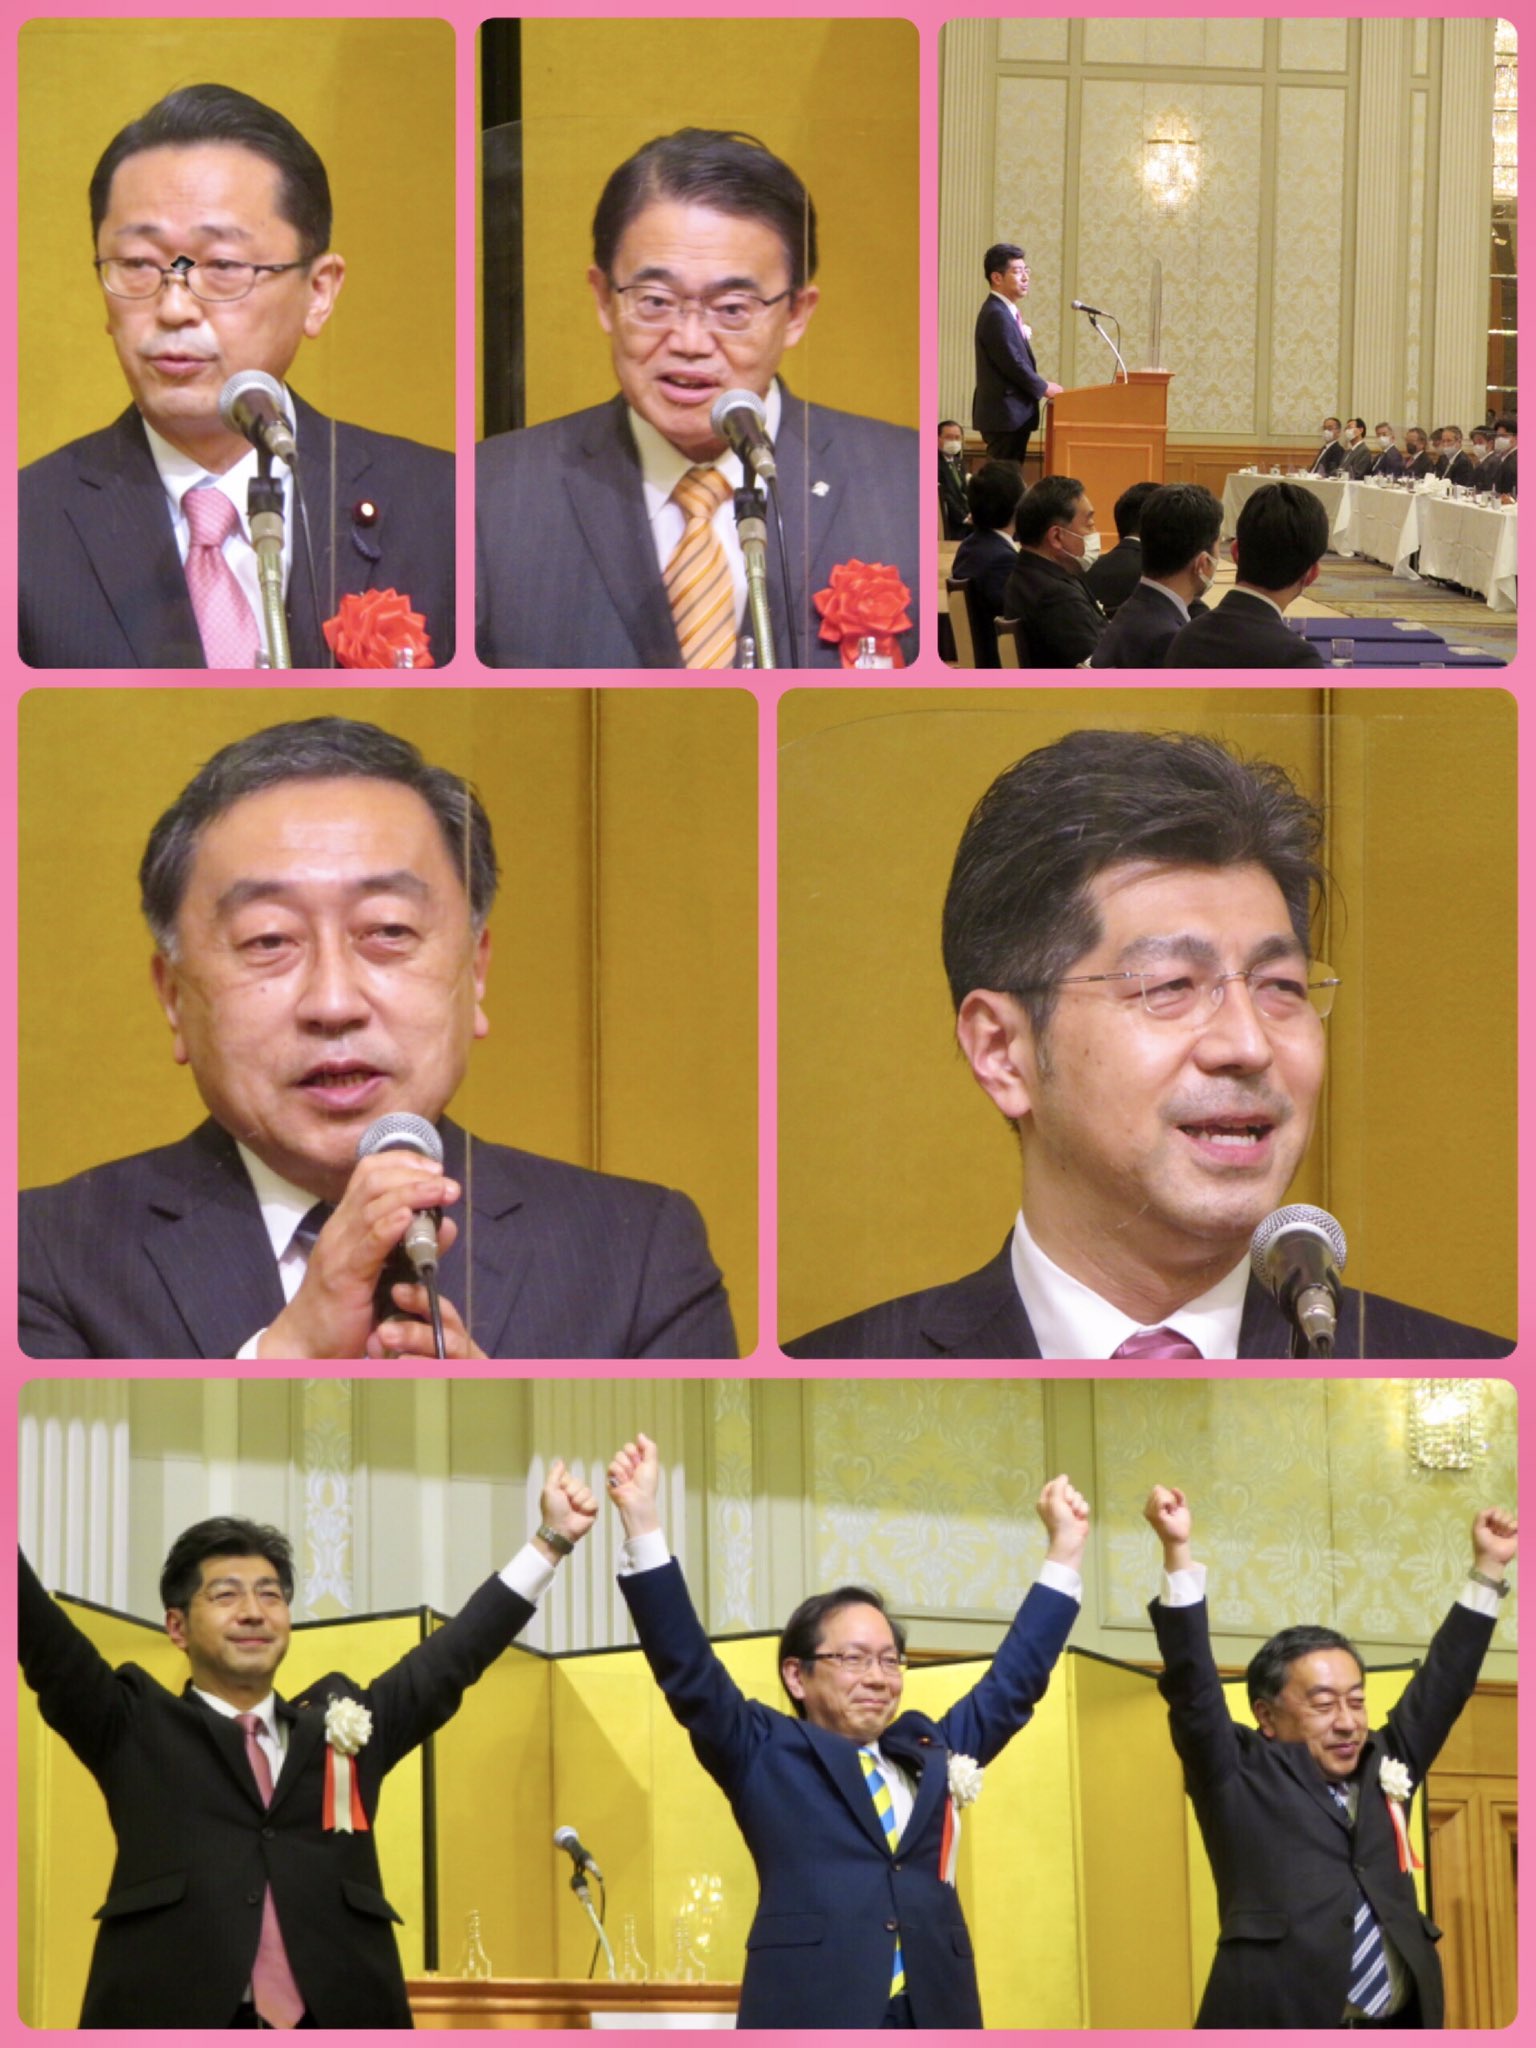 公明党愛知県本部のセミナー「飛躍の集い」を開催